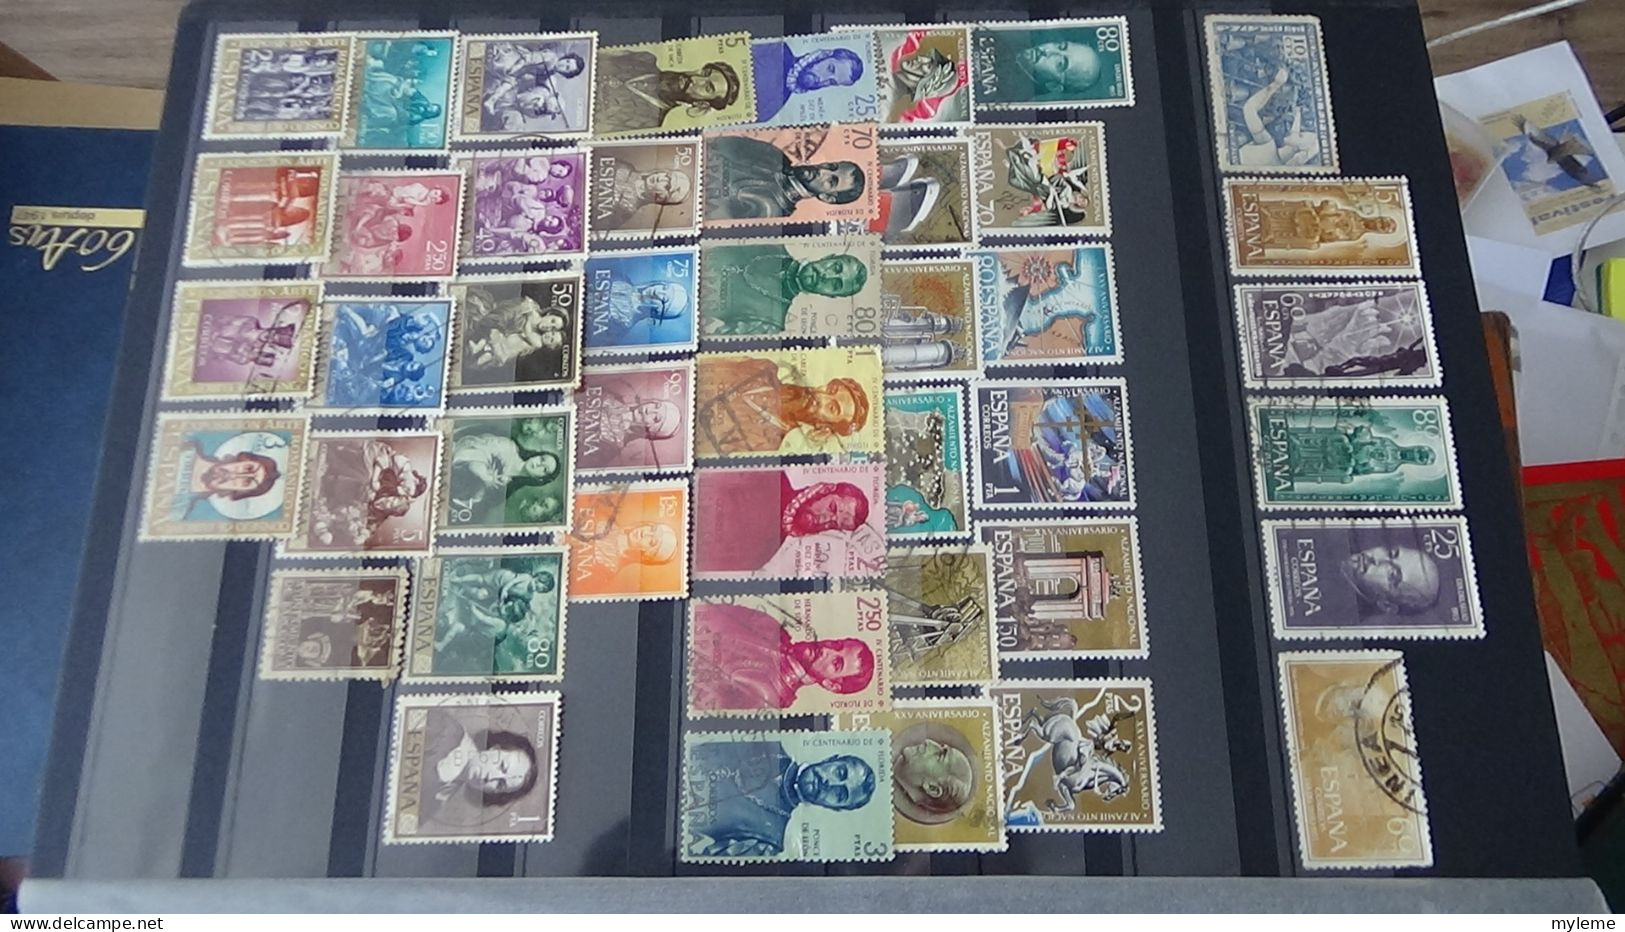 AZ136 Bel ensemble de timbres oblitérés d'Espagne + plaquette de timbres ** de France.  A saisir !!!